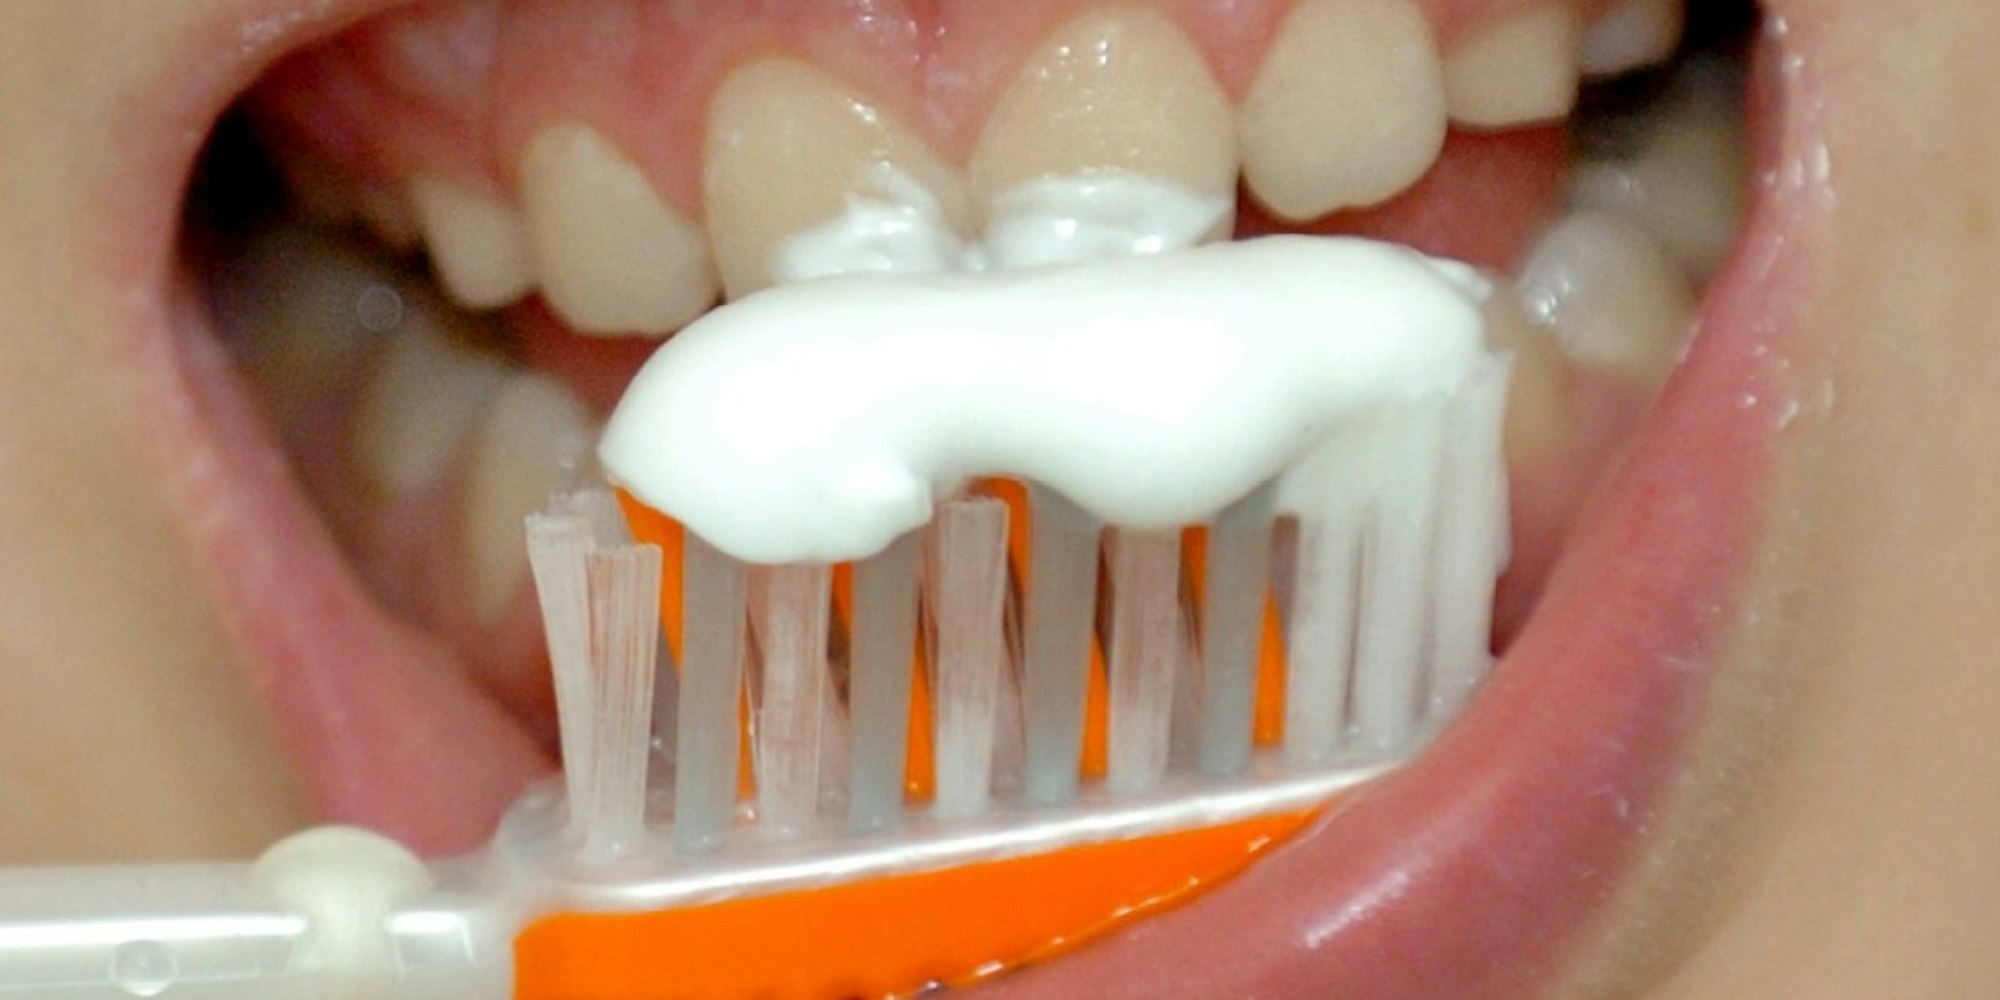 Zähne putzen mit Salz statt Zahnpasta? Das ist nur ein beknackter Spartipp von vielen, die im Netz kursieren.